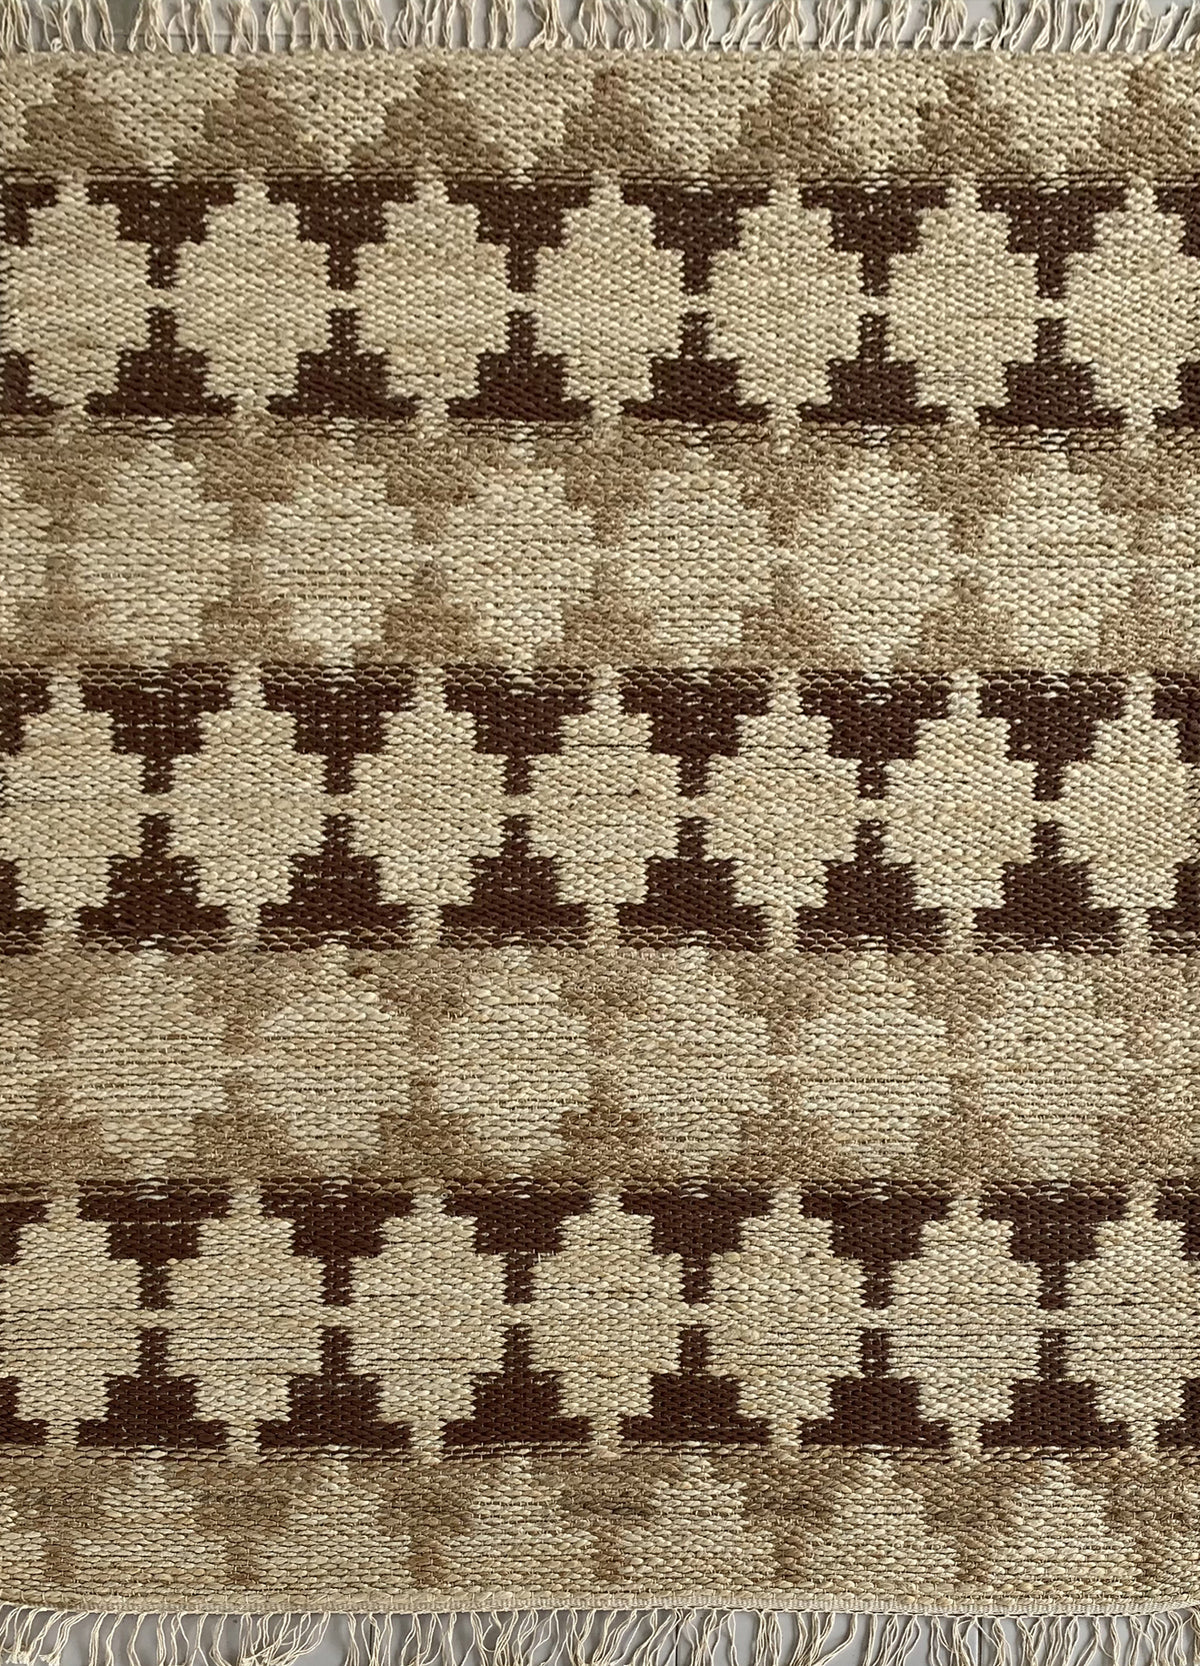 Rugslane Mutli Jute Carpet 4.0ft X 6.0ft